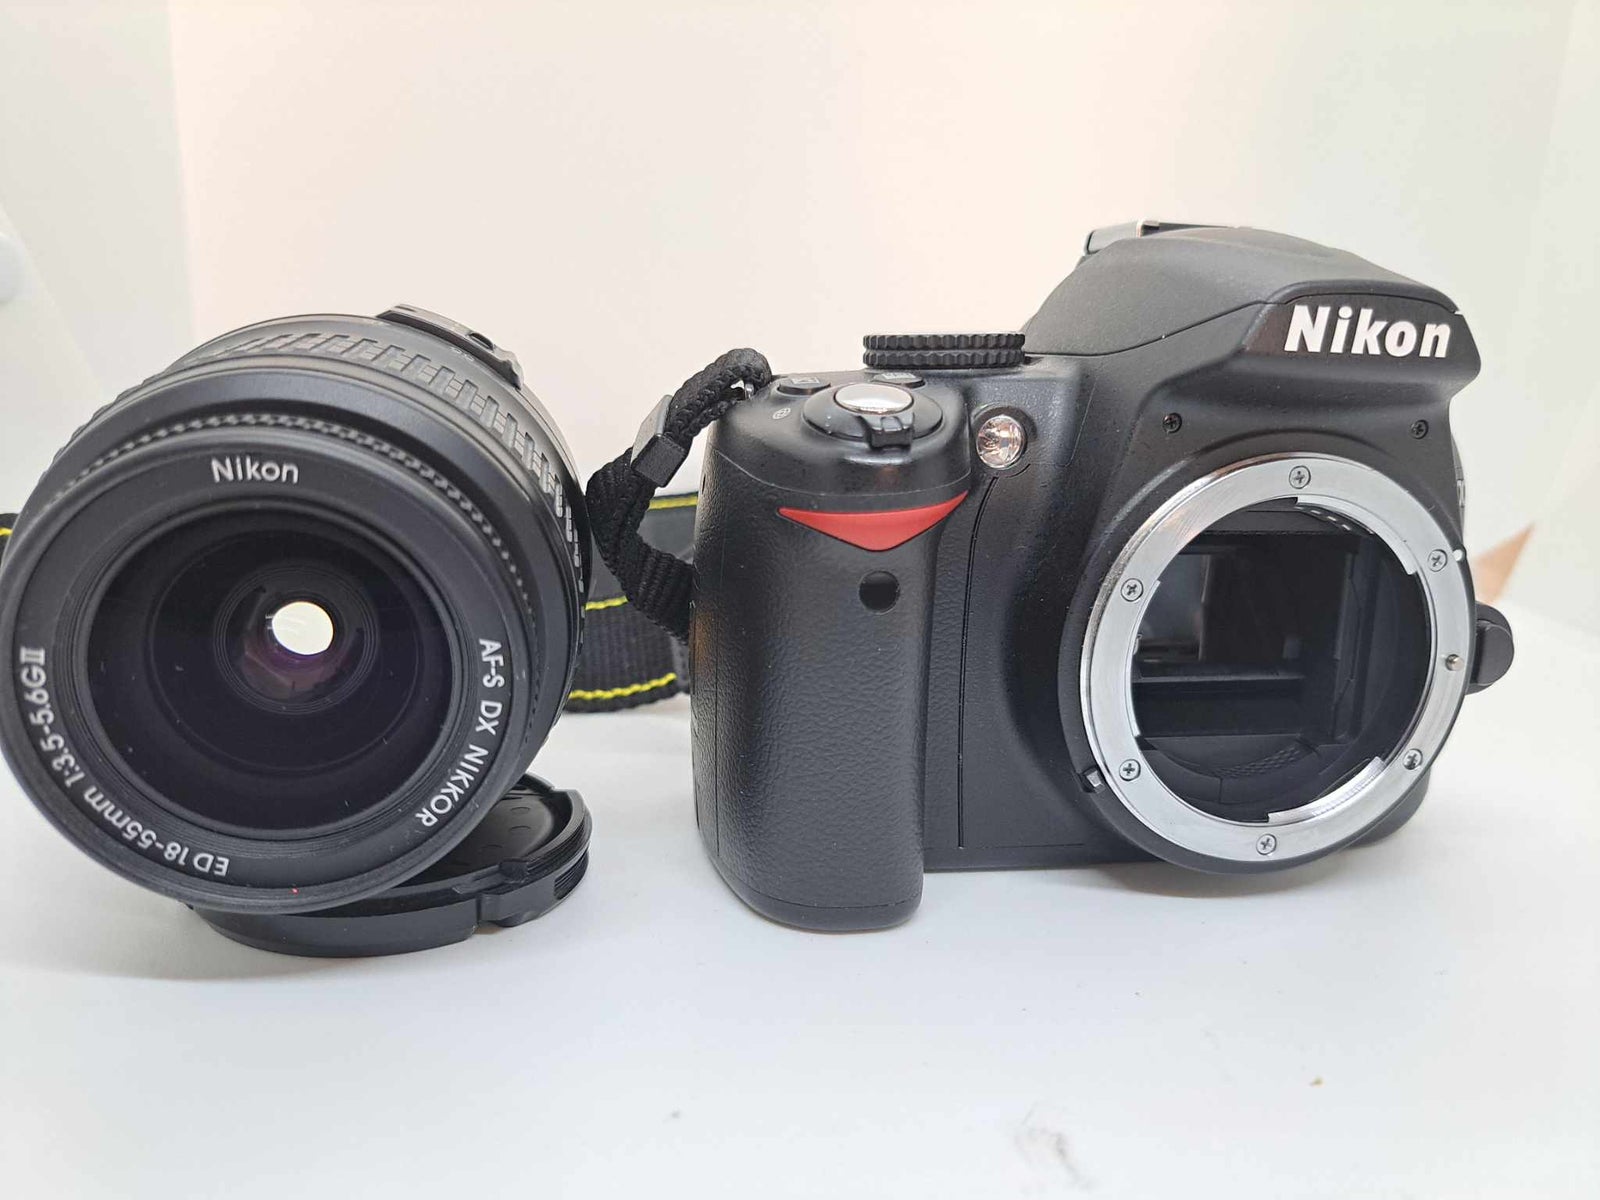 Nikon D3000, spejlrefleks, 10,2 megapixels